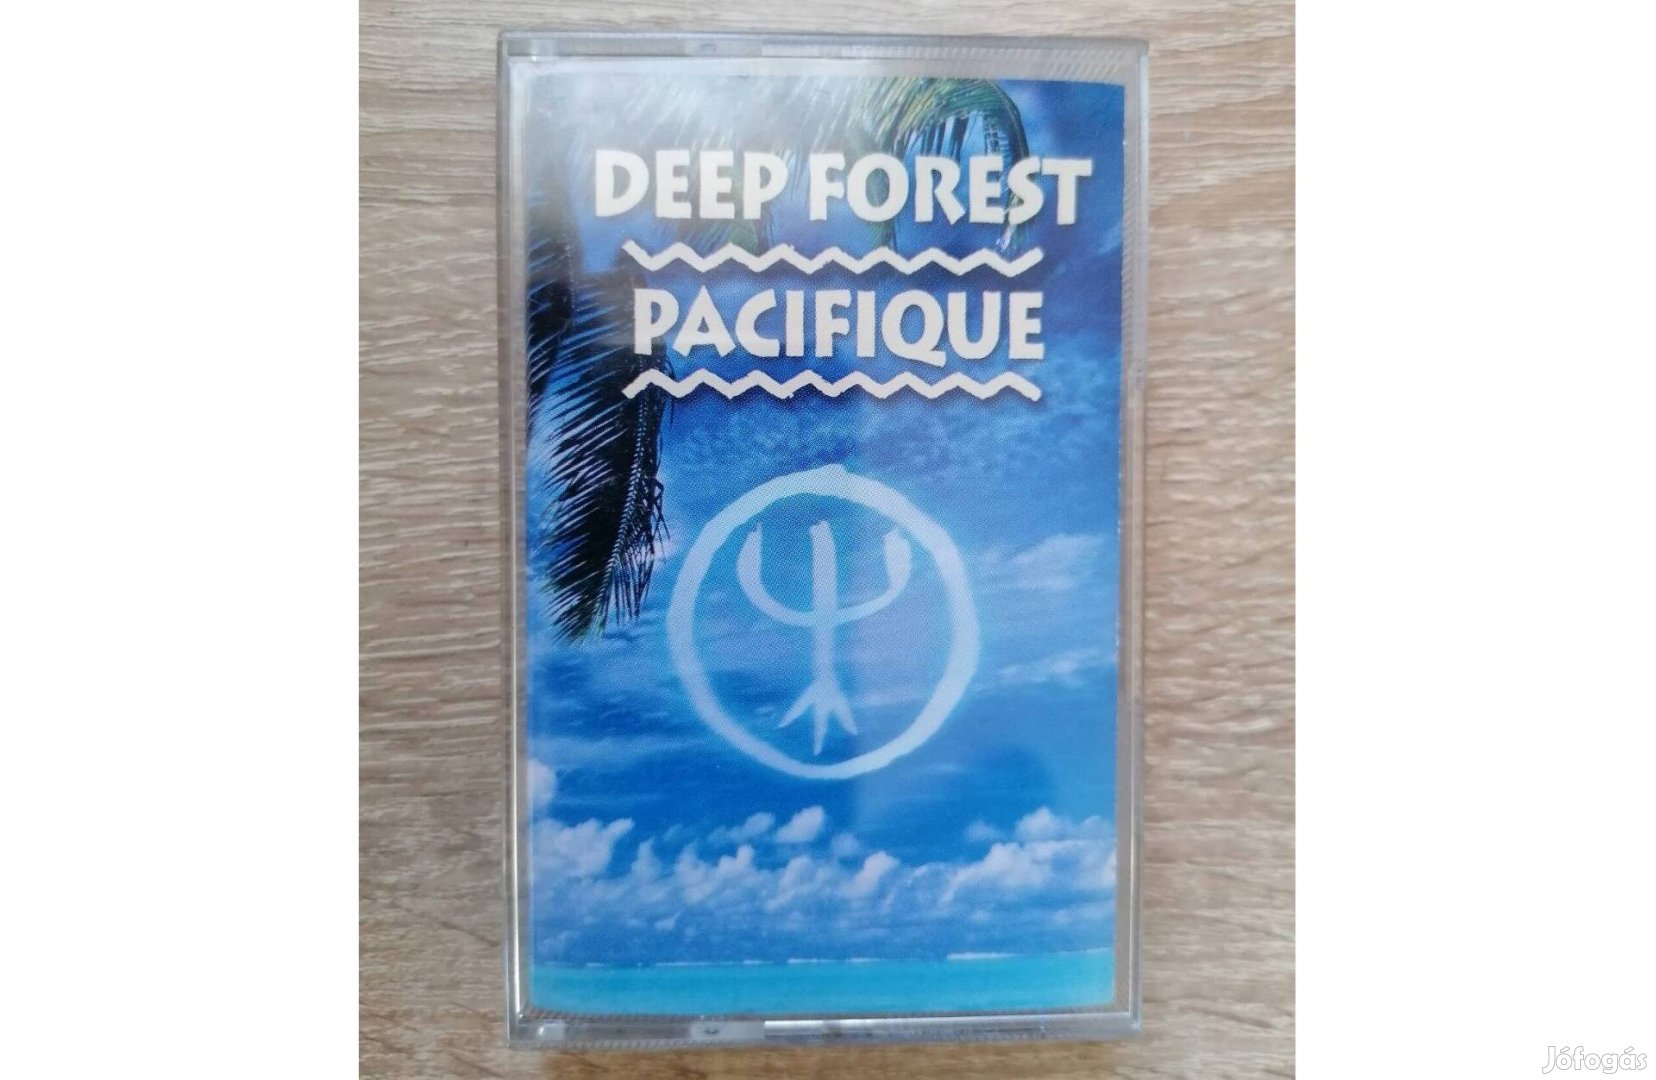 Magnókazetta (Deep Forest - Pacifique)